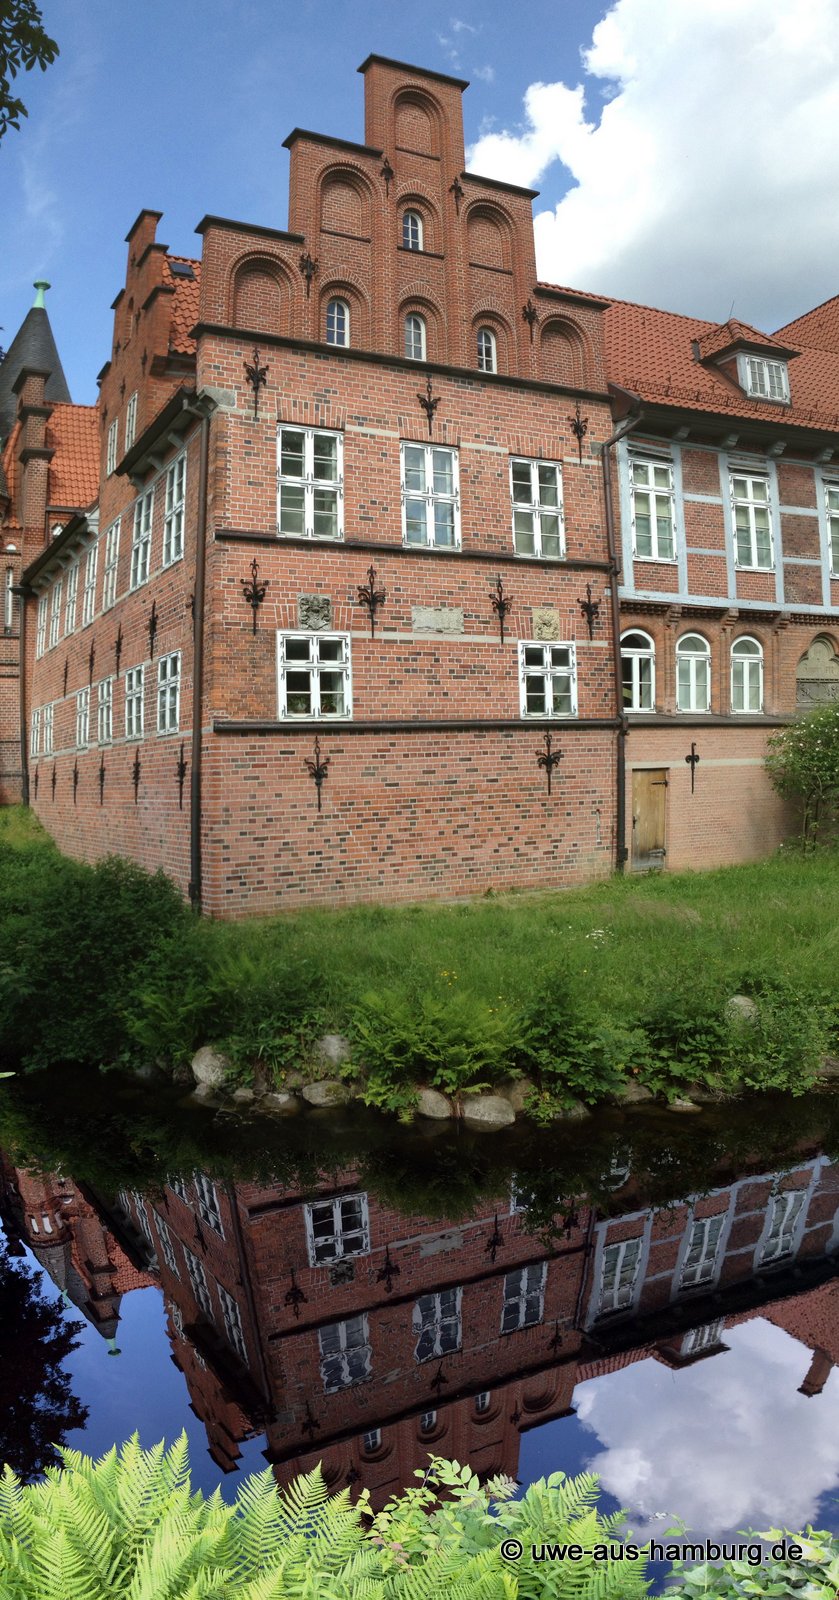 Das Schloss Bergedorf
In Bergedorf steht Hamburgs einziges, erhaltenes Schloss. Es liegt direkt an der Fußgängerzone, beinhaltet das Museum für die Vier- und Marschlande sowie ein Cafe.